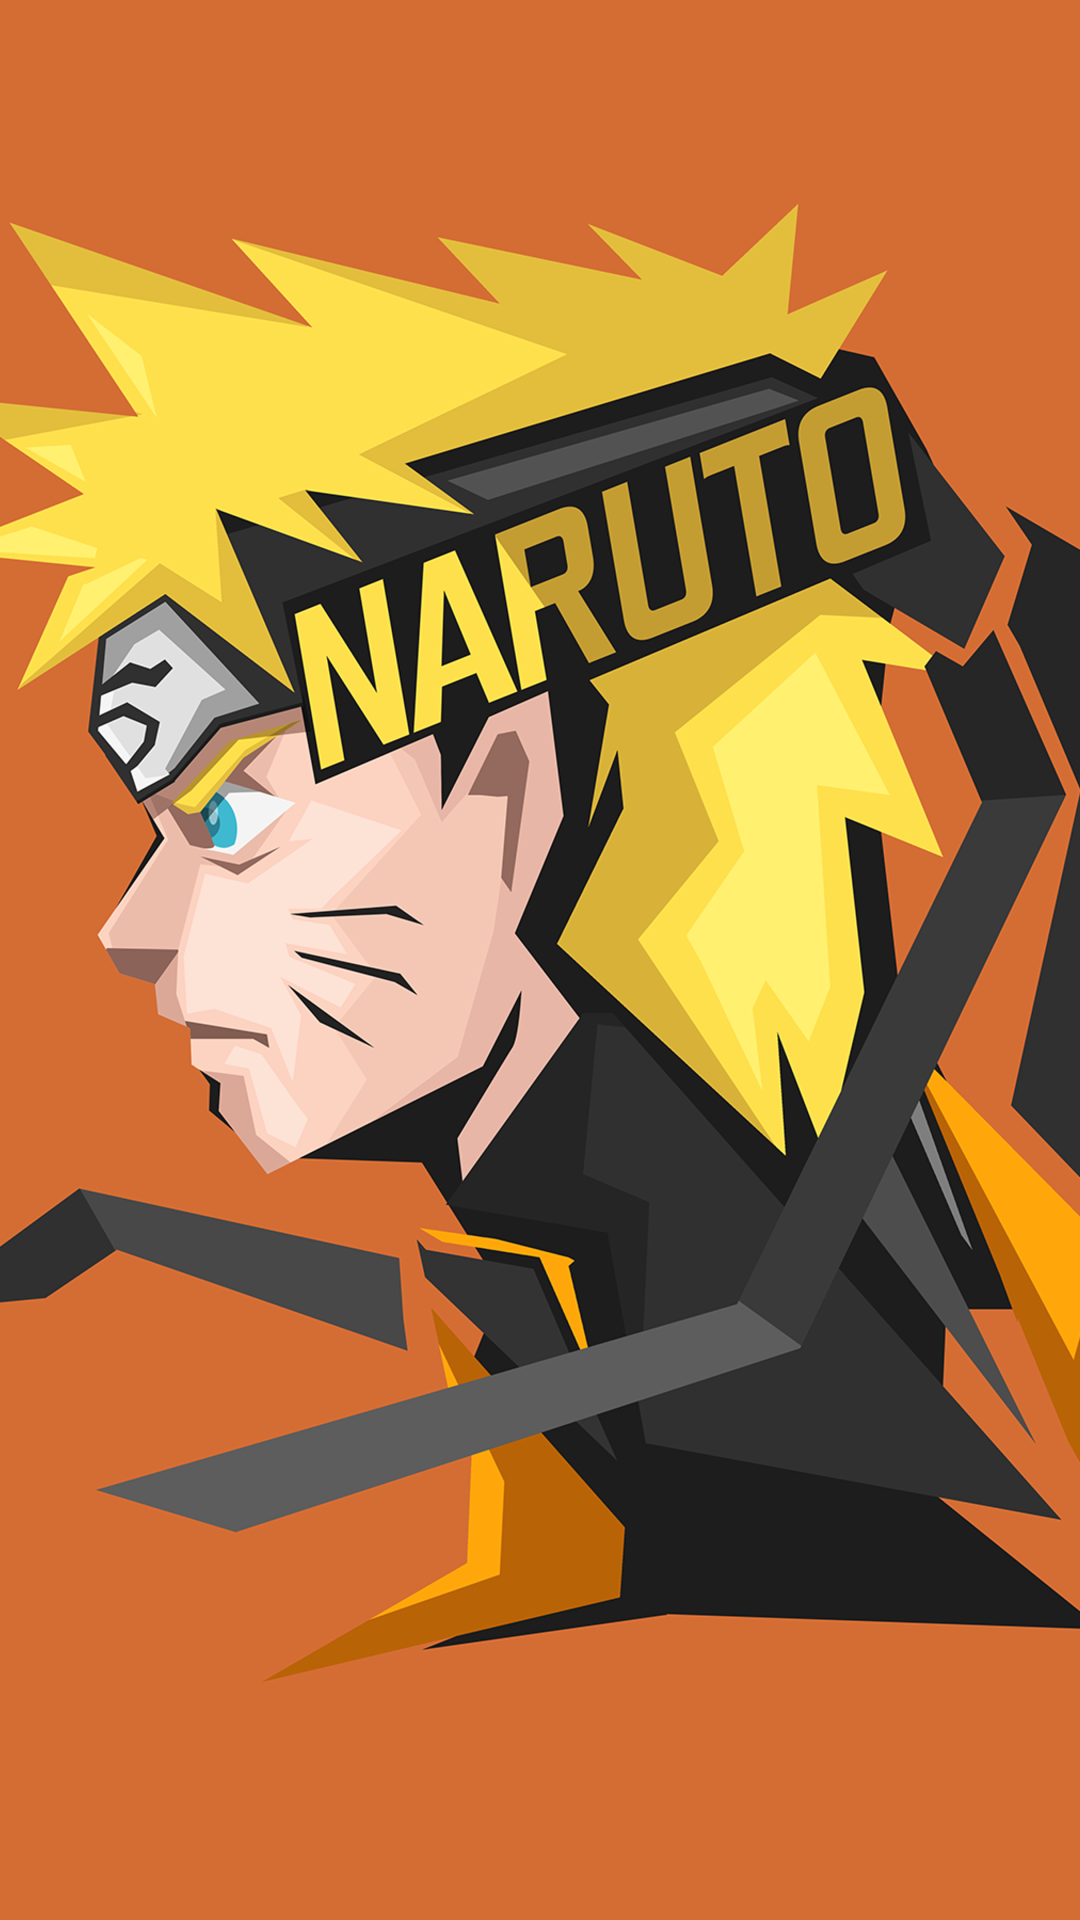 Tải 50 Hình Ảnh Naruto Full Hd Đẹp Nhất Thế Giới - Hà Nội Spirit Of Place